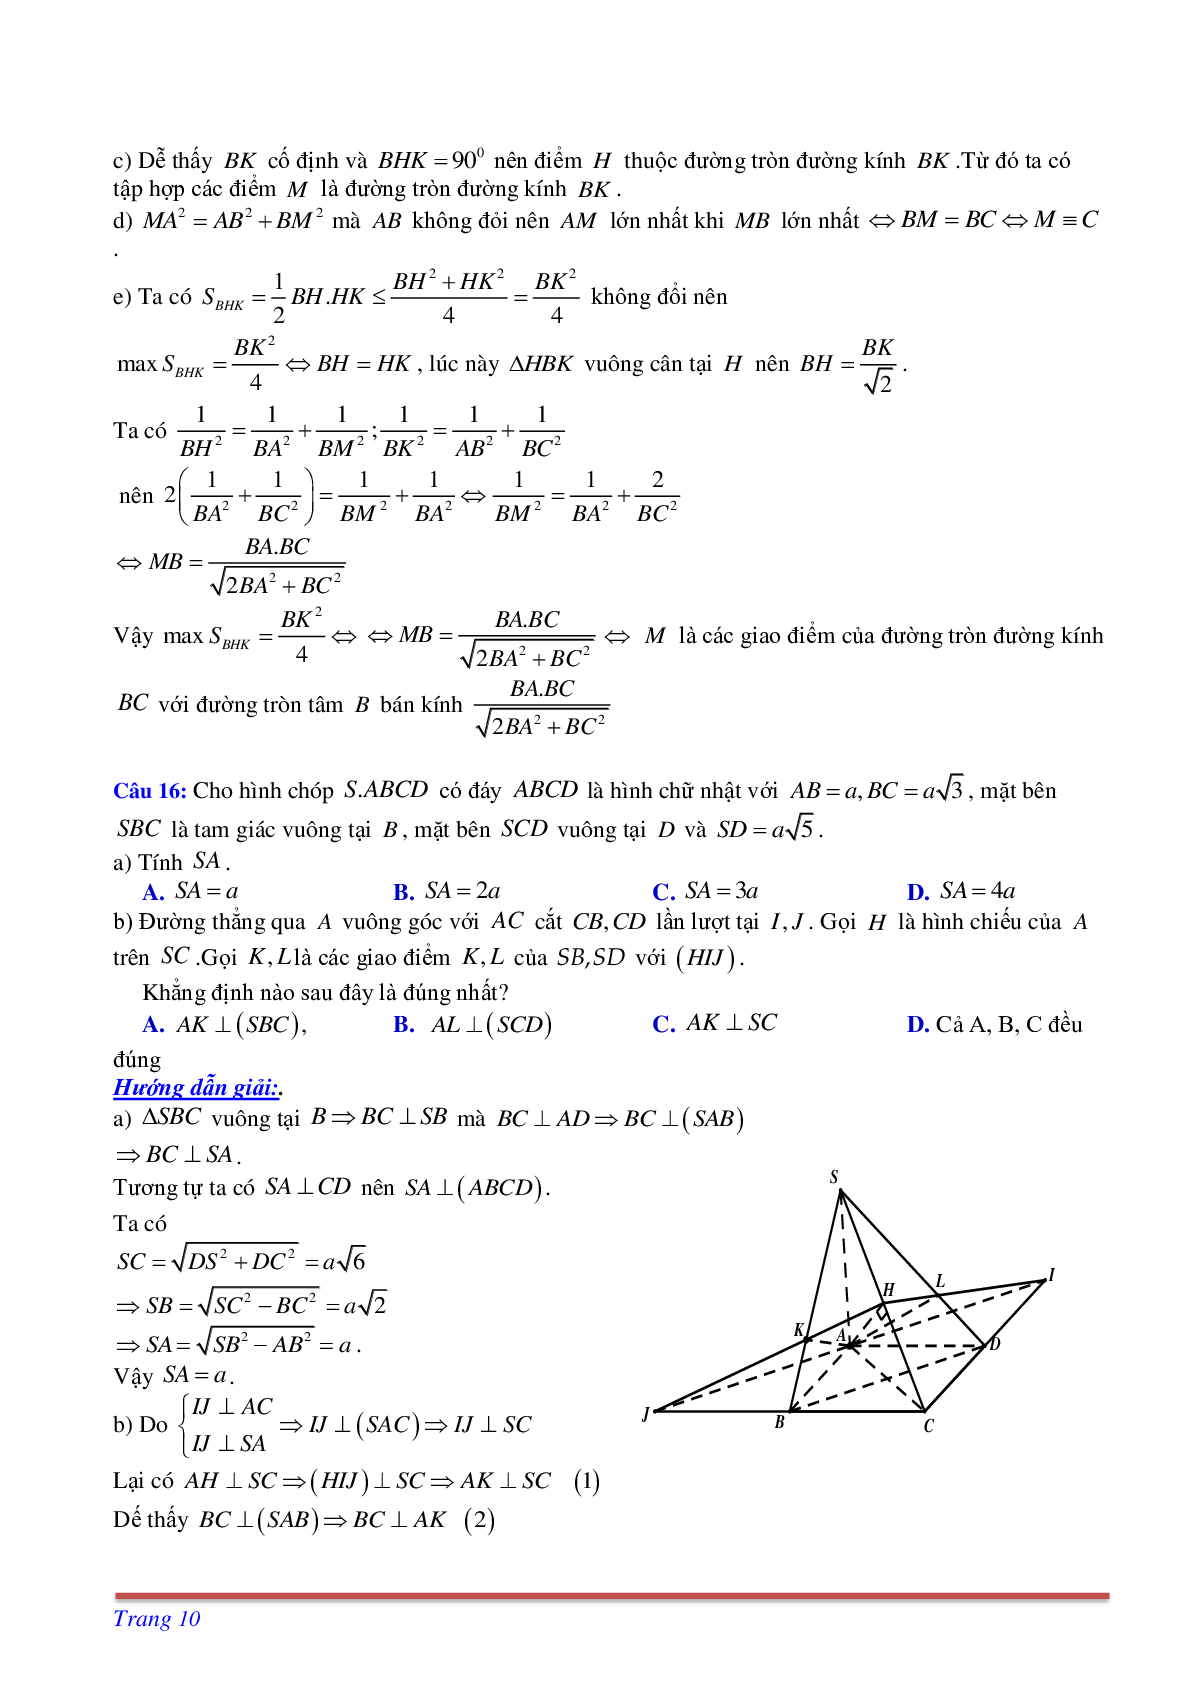 Phương pháp giải và bài tập về Cách tìm thiết diện liên quan đến vuông góc có đáp án (trang 10)